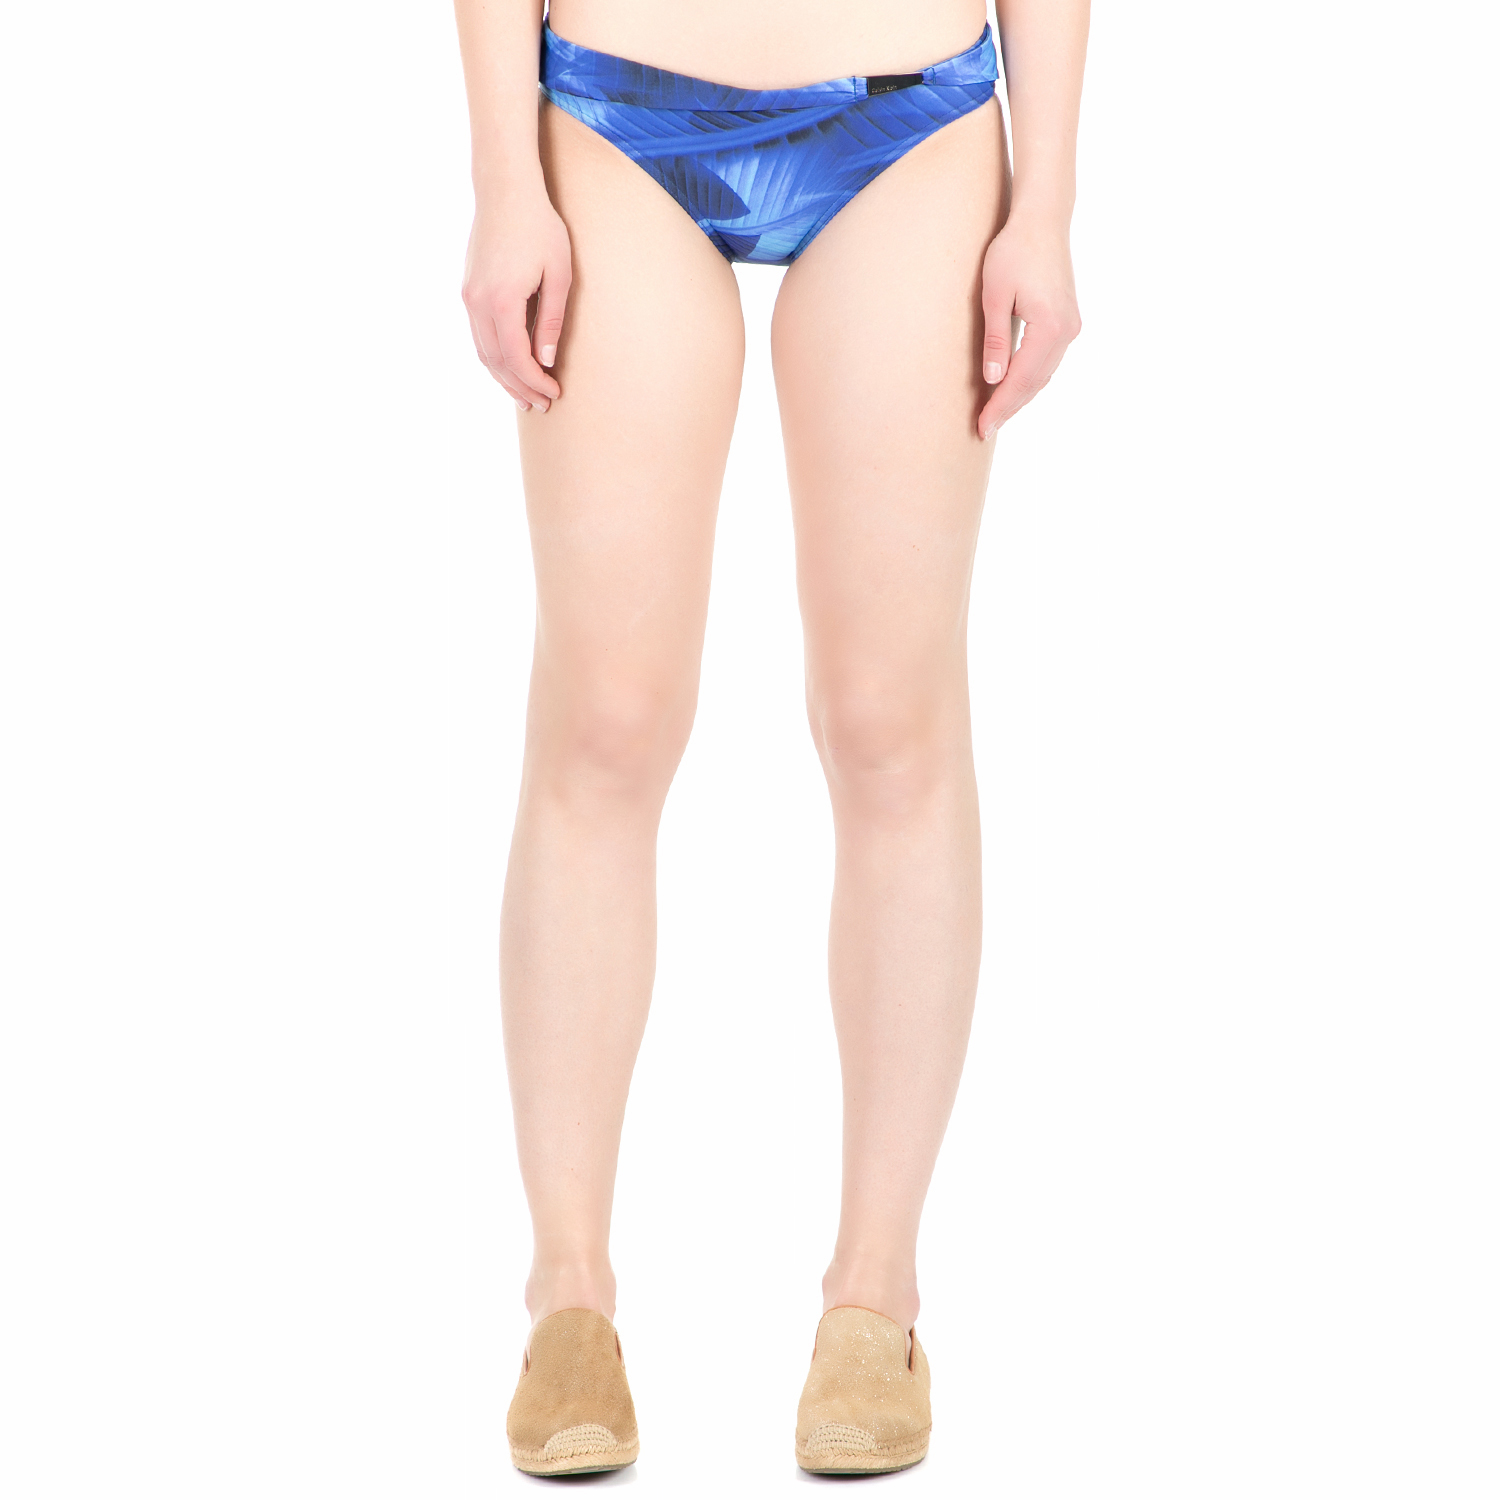 Γυναικεία/Ρούχα/Μαγιό/Κάτω Μερος CK UNDERWEAR - Γυναικείο σλιπ μπικίνι CK Underwear BELTED FULL μπλε